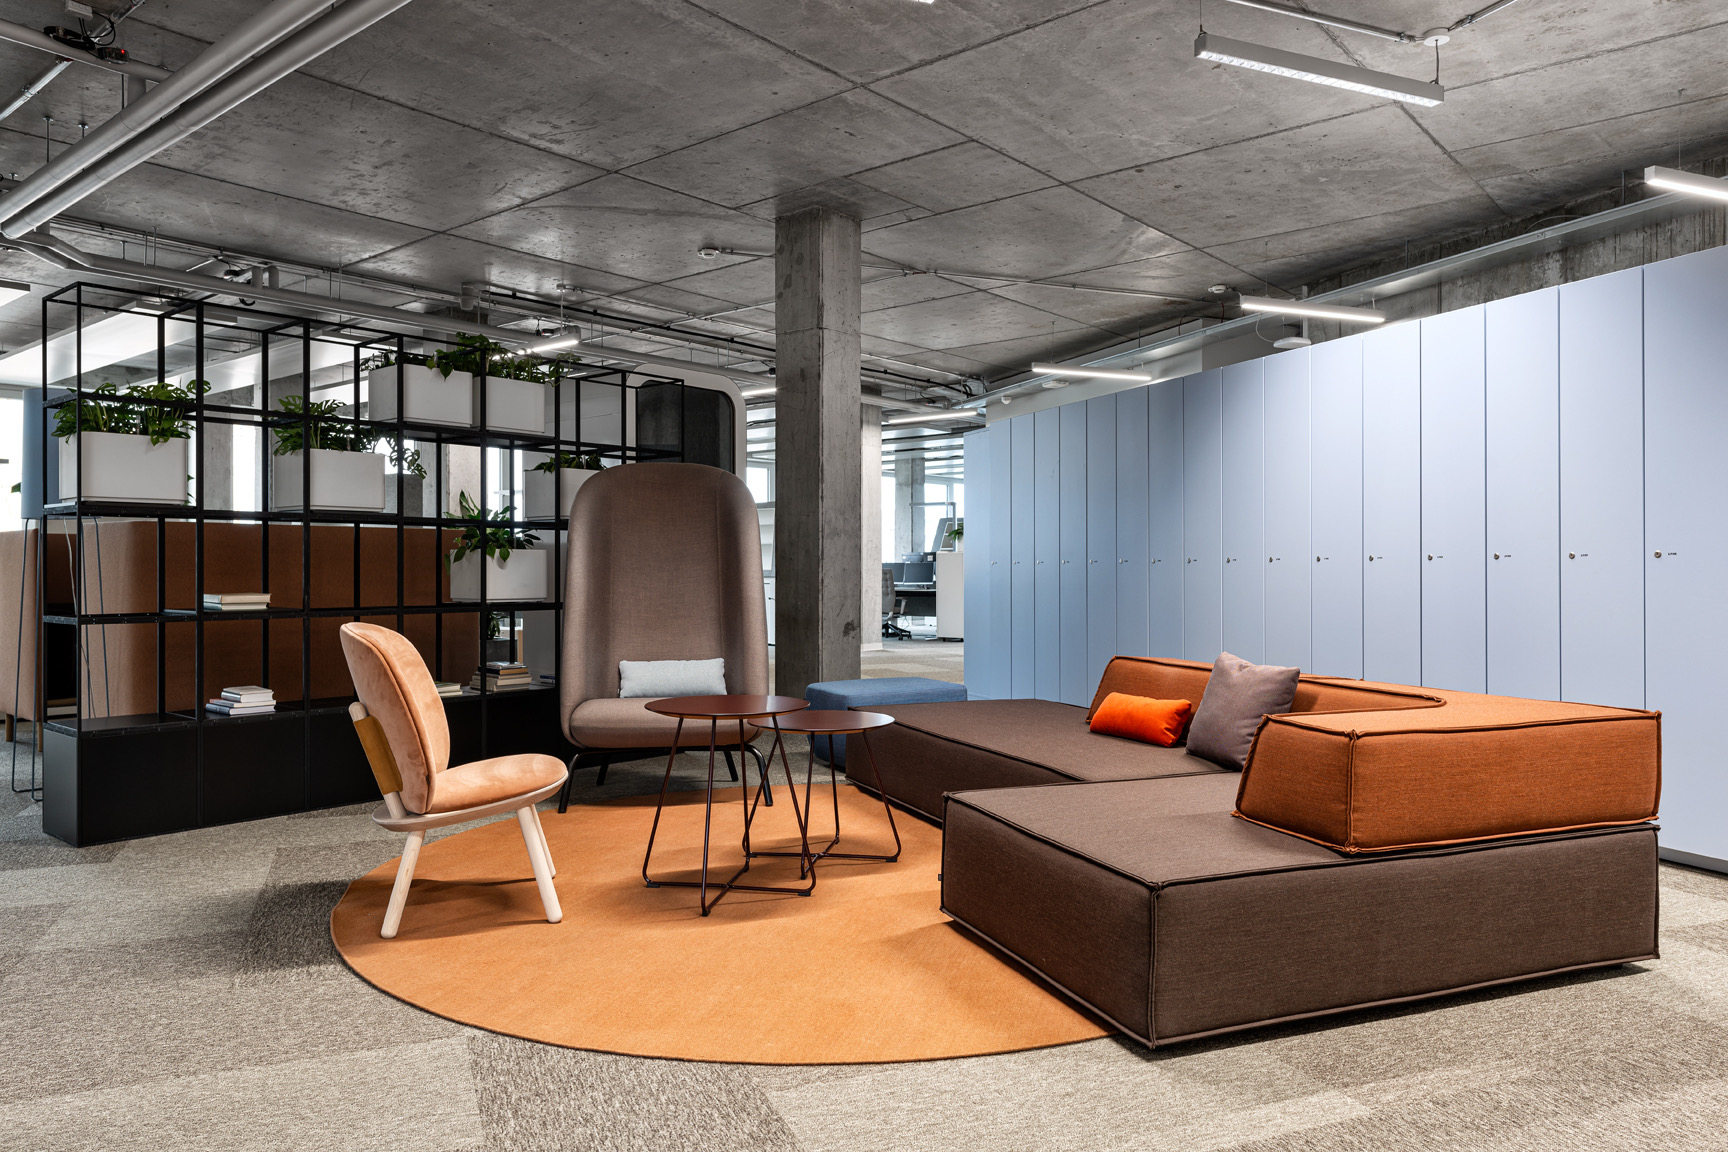 A Look Inside 50 Hertz’s New Berlin Office